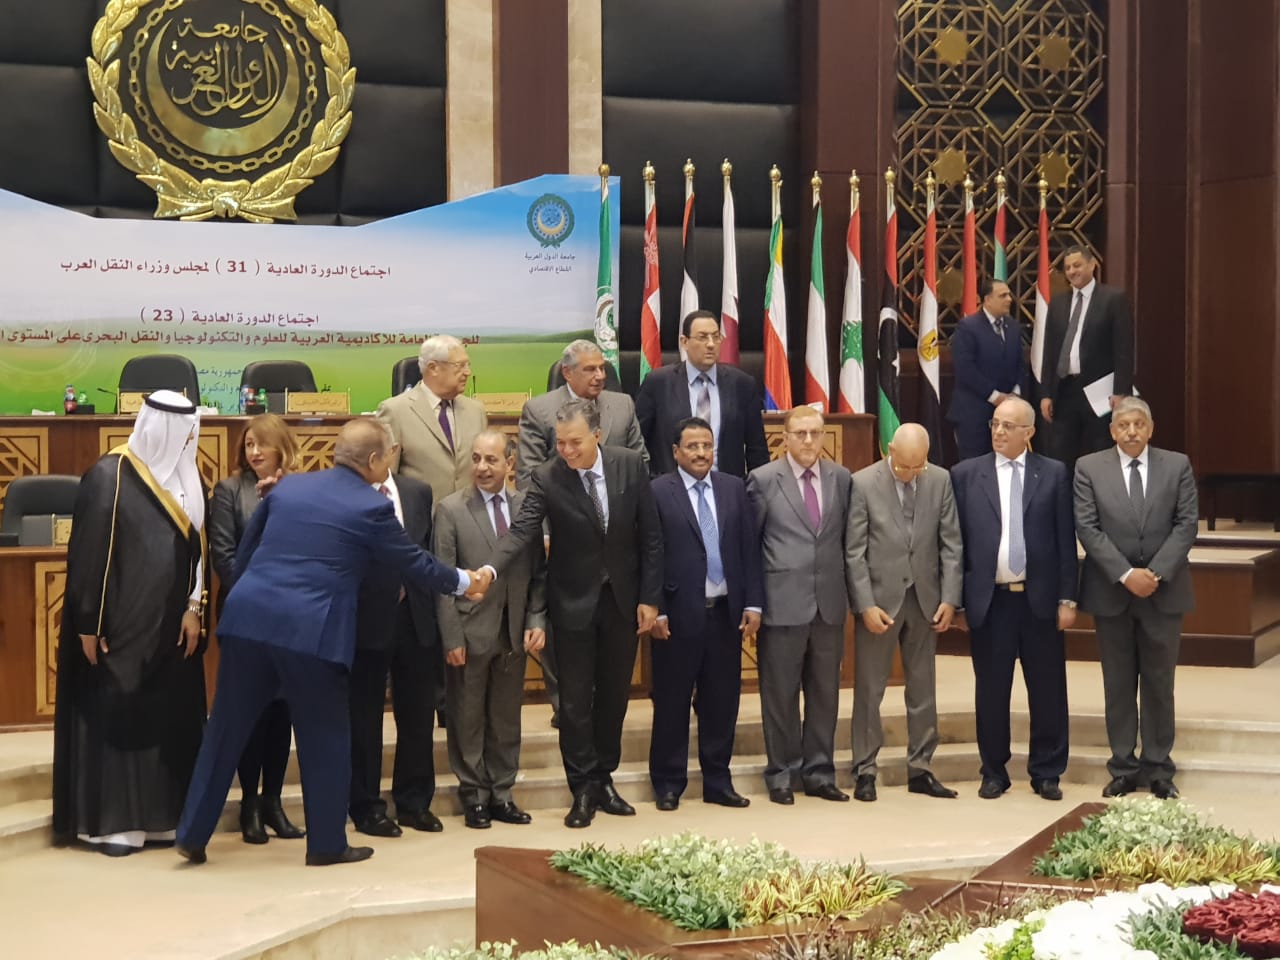  وزير النقل يفتتح  فعاليات اجتماع مجلس وزراء النقل العرب بمقر الأكاديمية العربية (5)